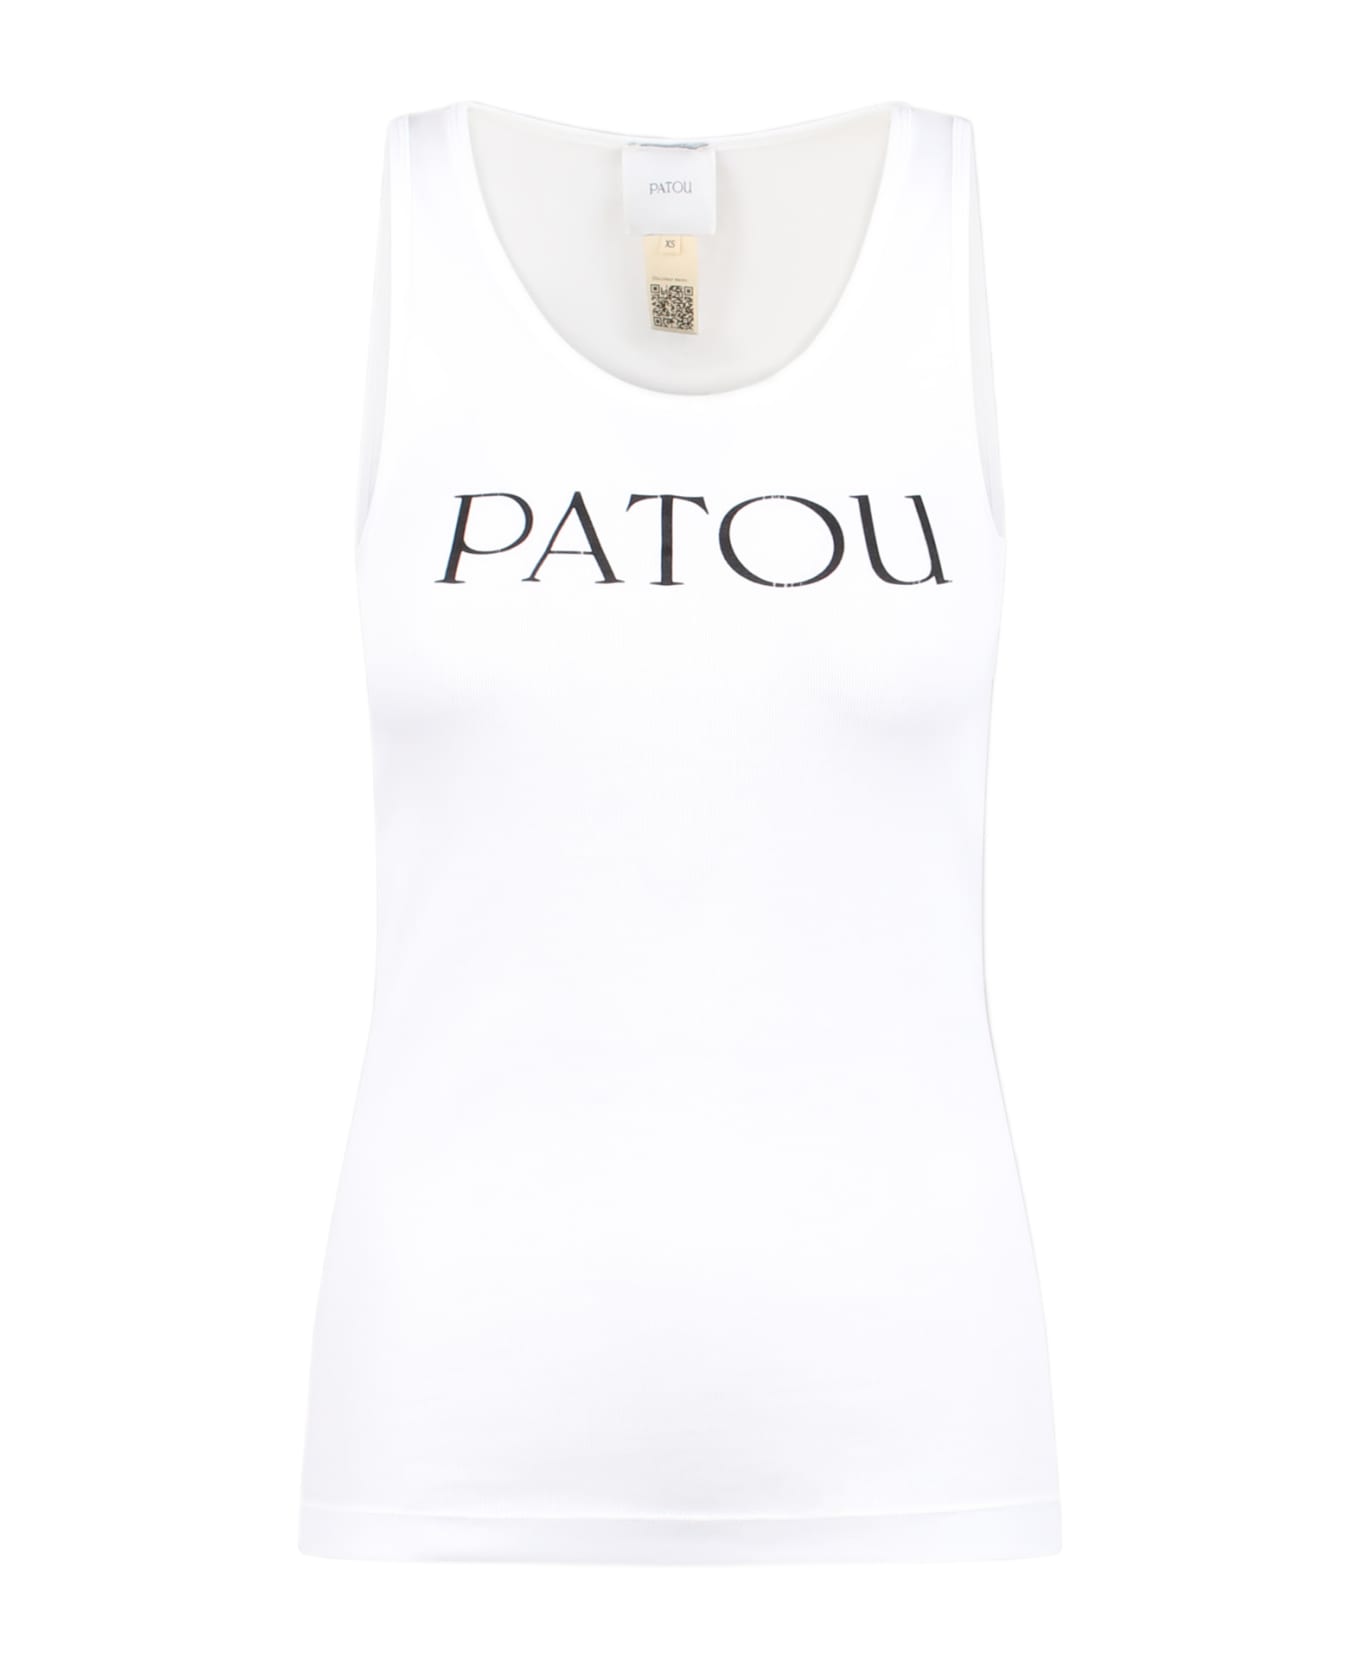 Patou Logo Print Tank Top